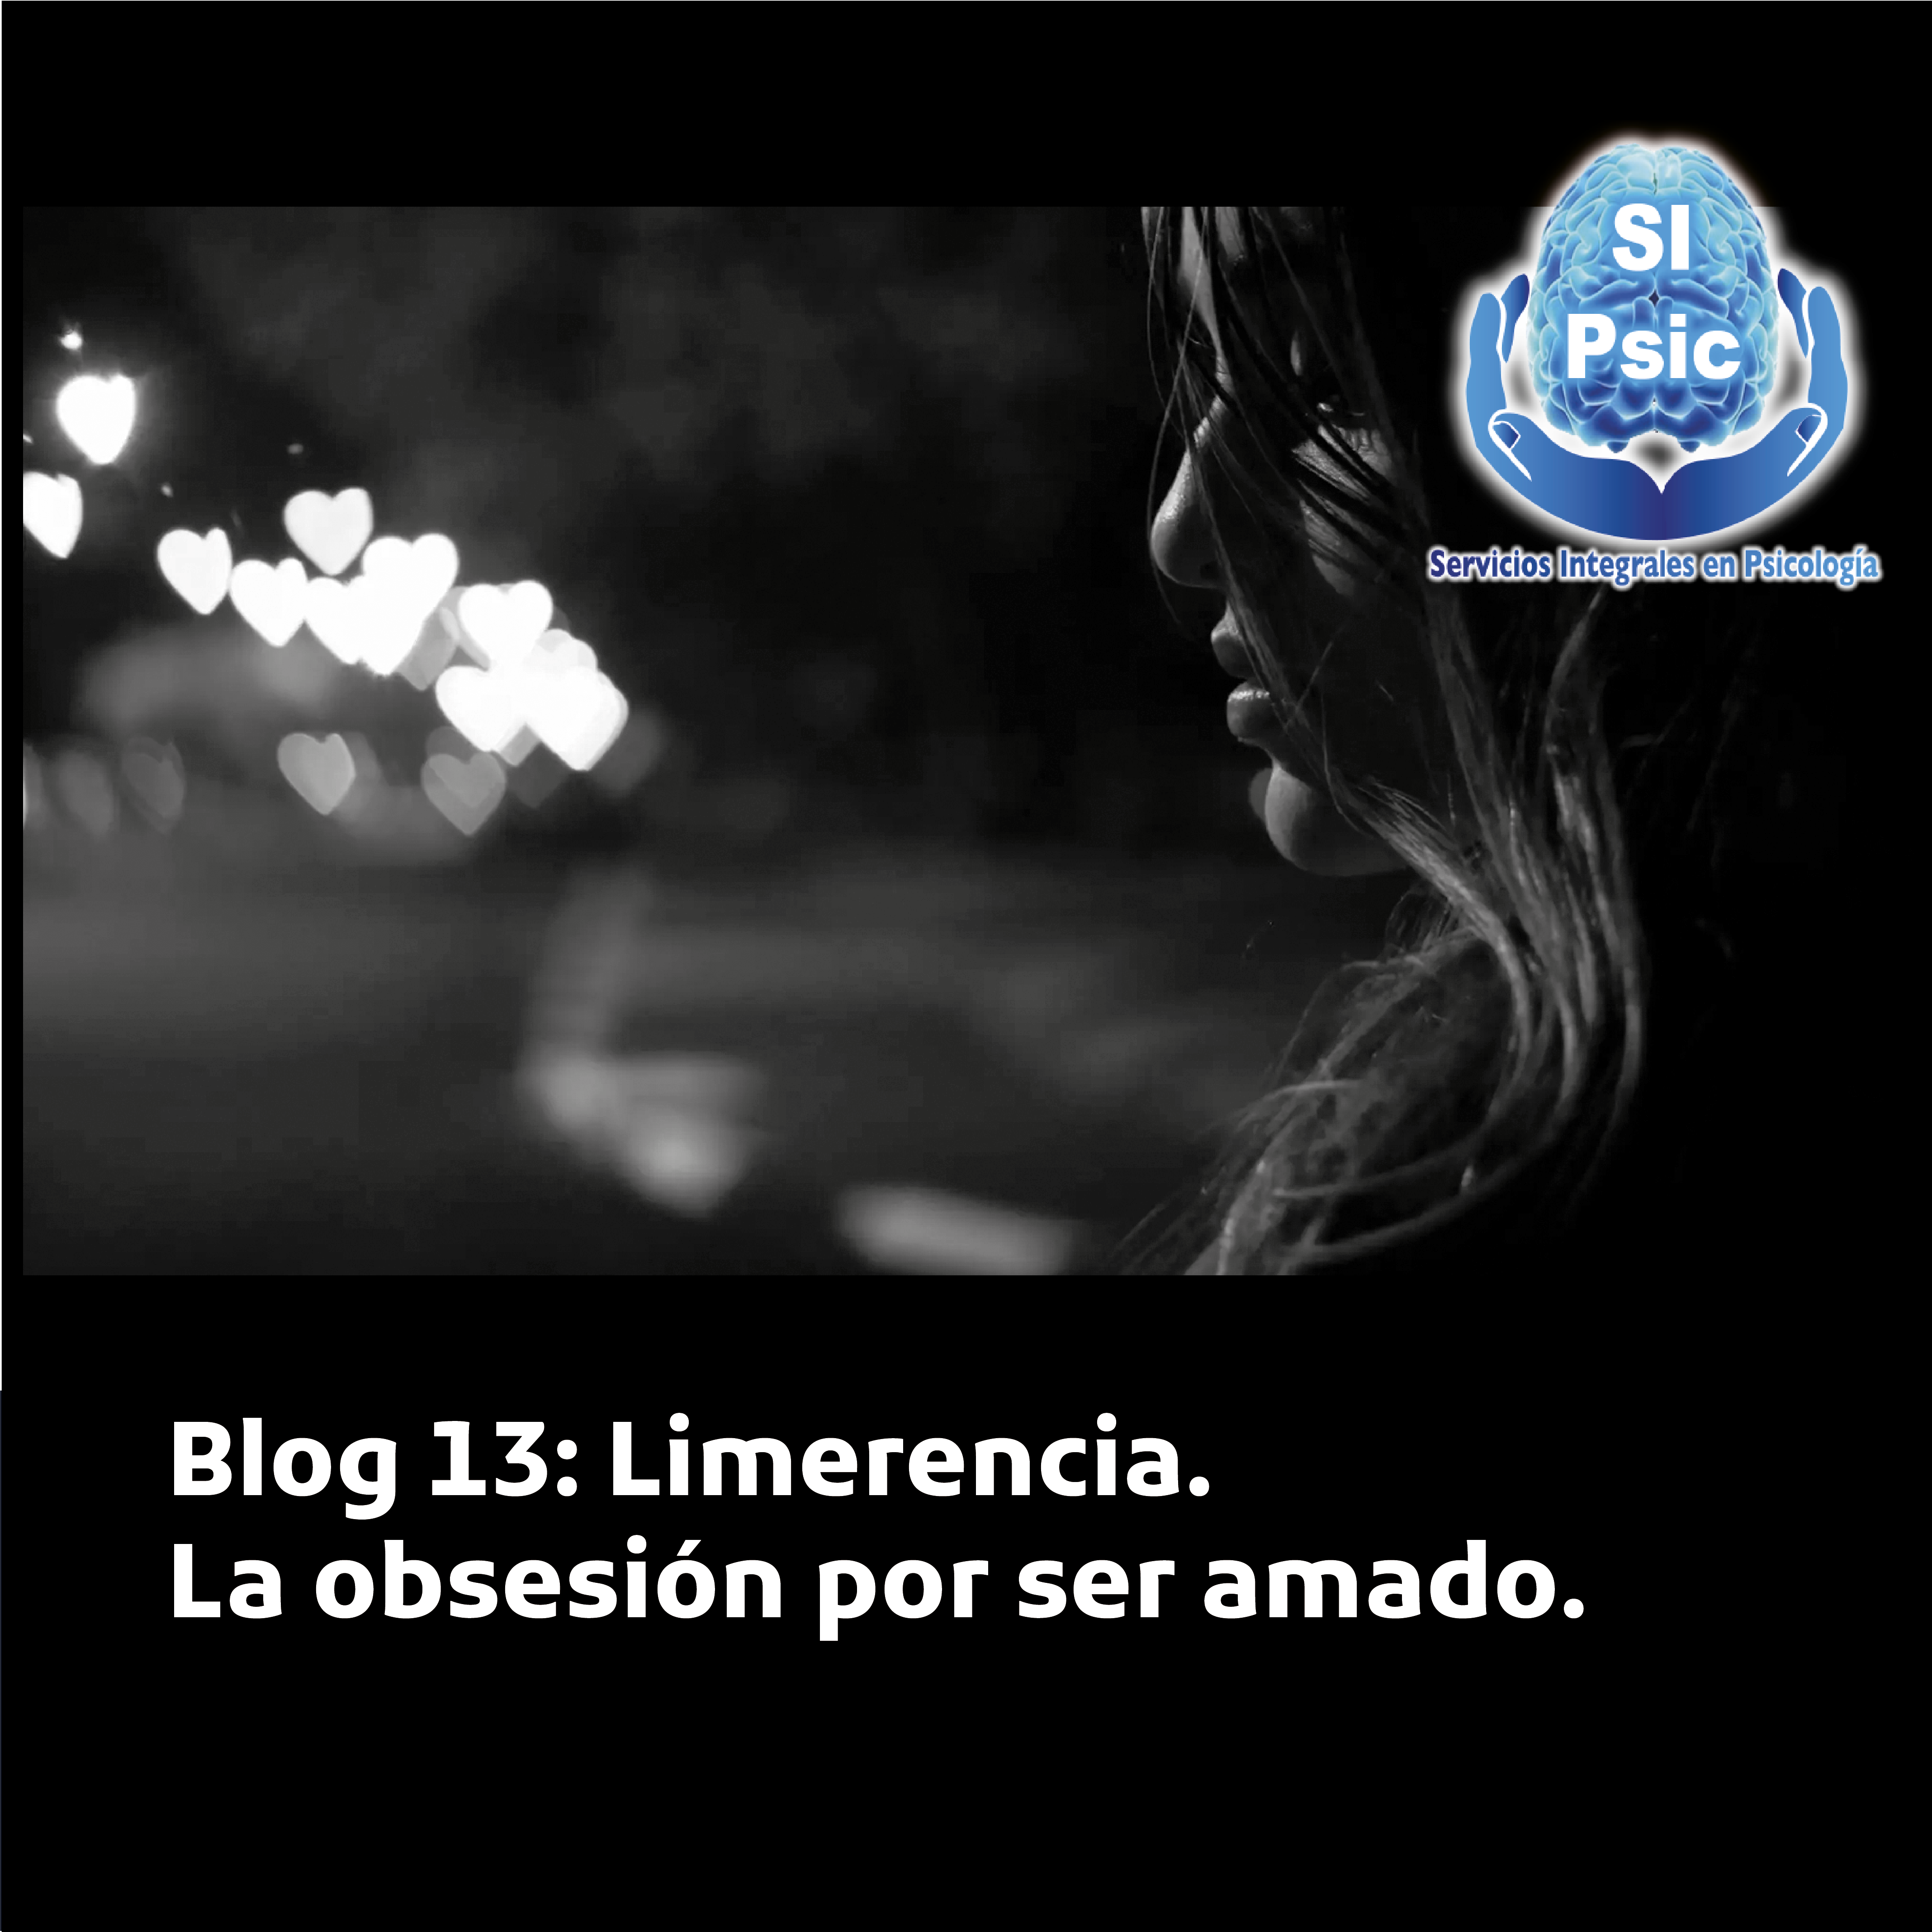 Blog 13: Limerencia. La obsesión por ser amado.